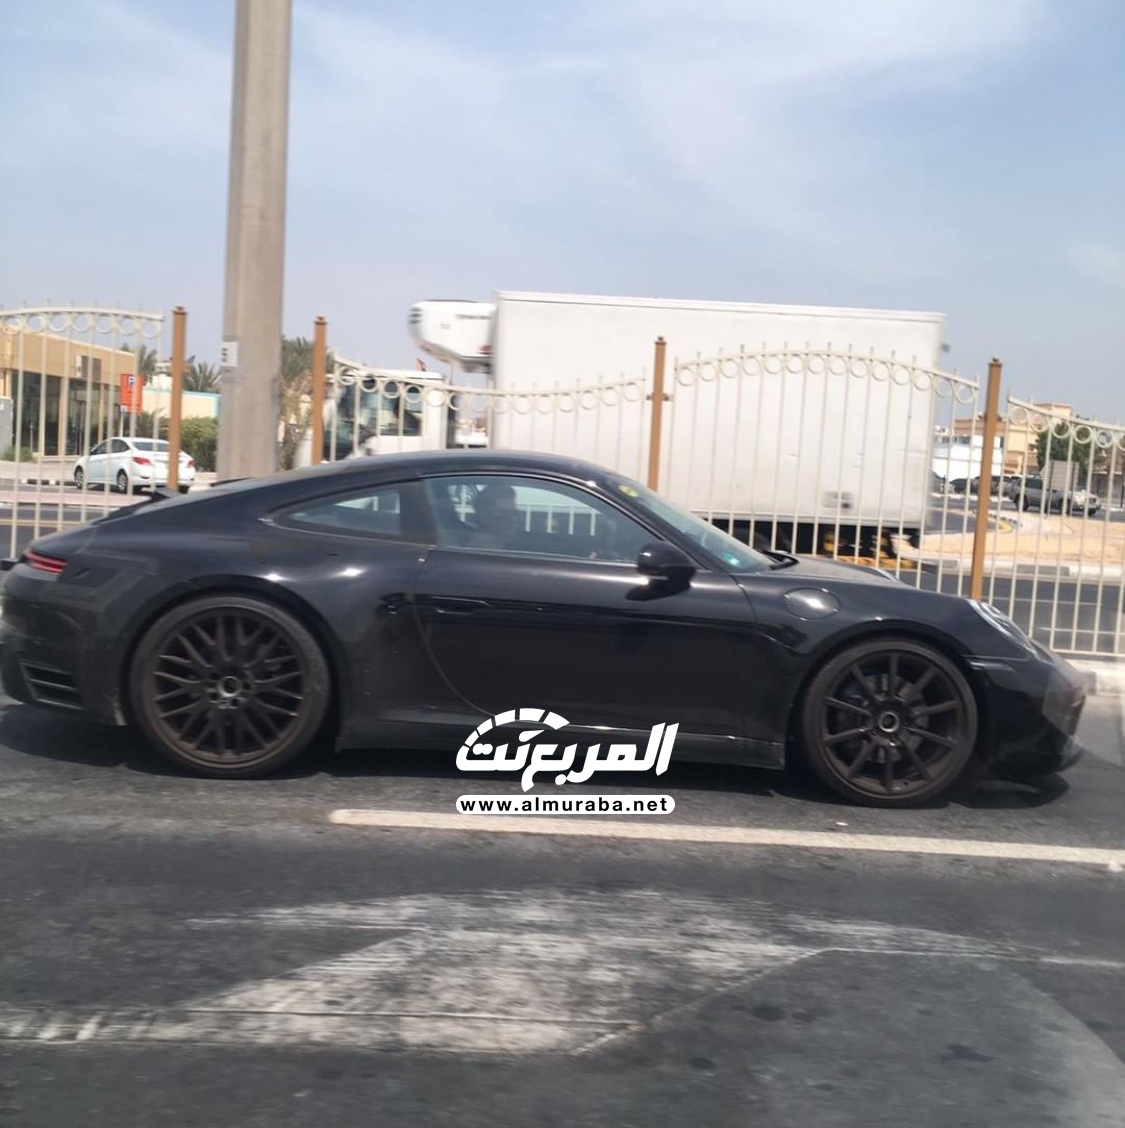 "بالصور" بورش 911 الجديدة كلياً تختبر نفسها في شوارع مدينة دبي 3